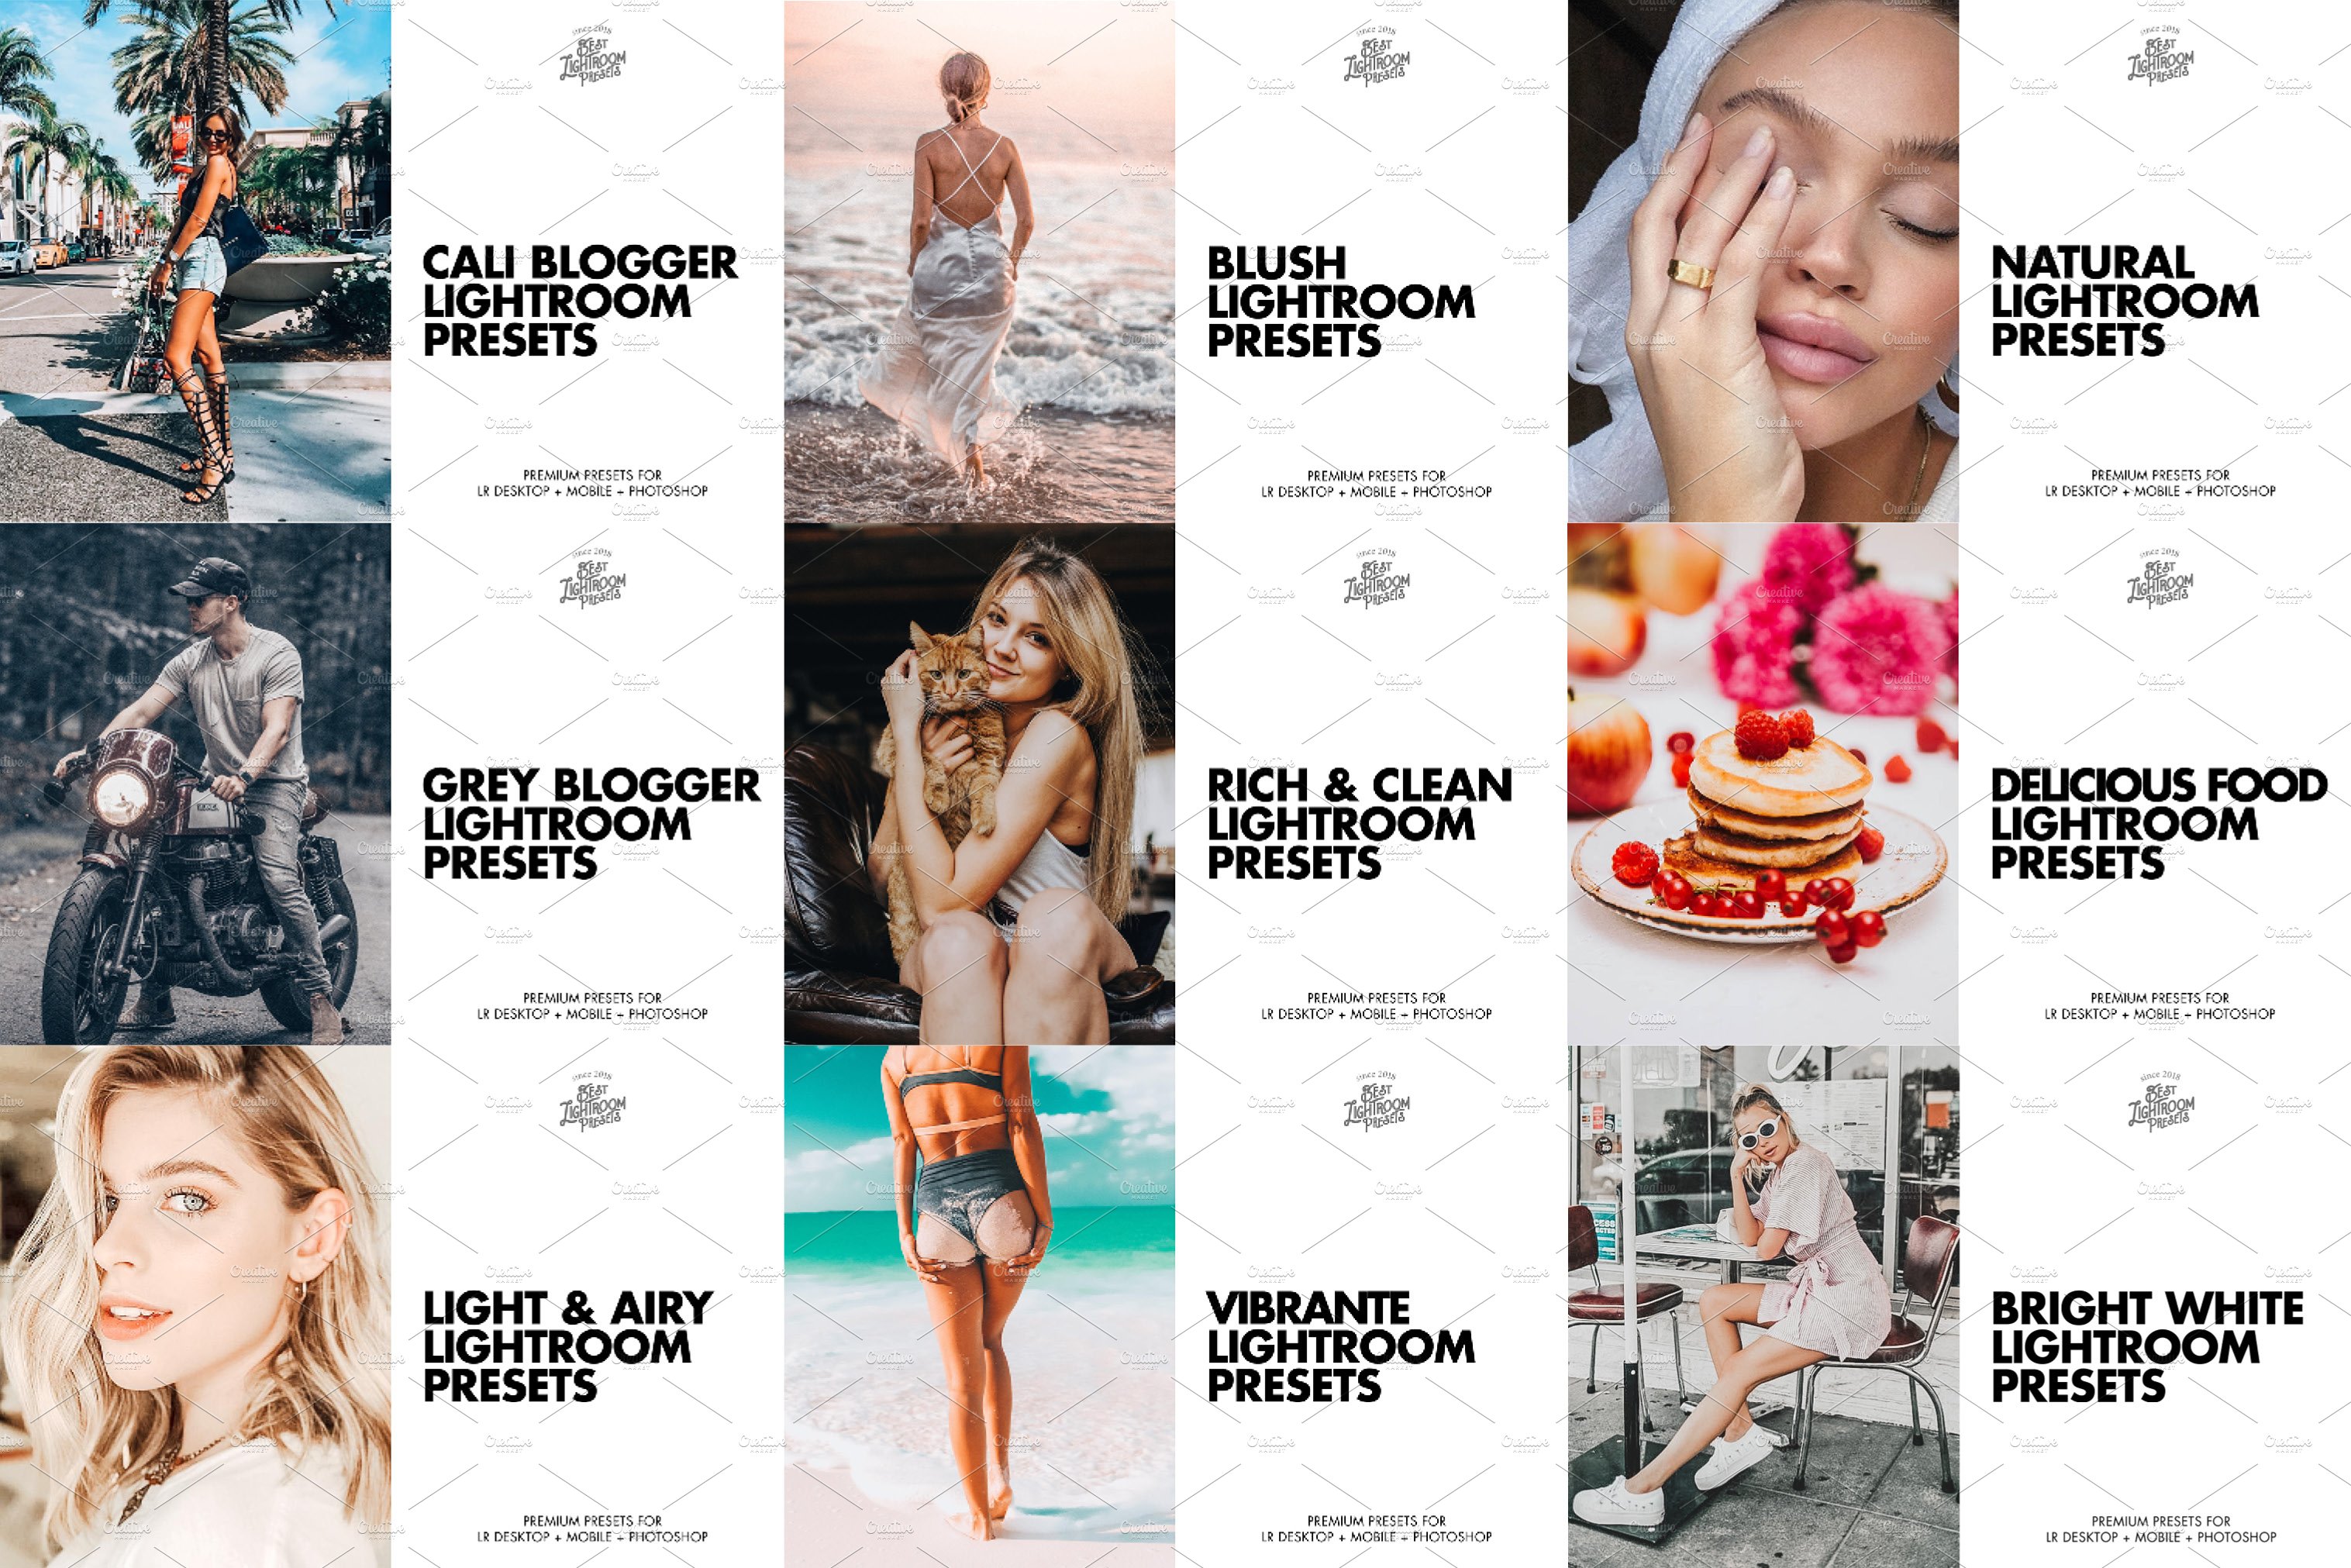 lightroom presets download free instagram bundle allshop 339